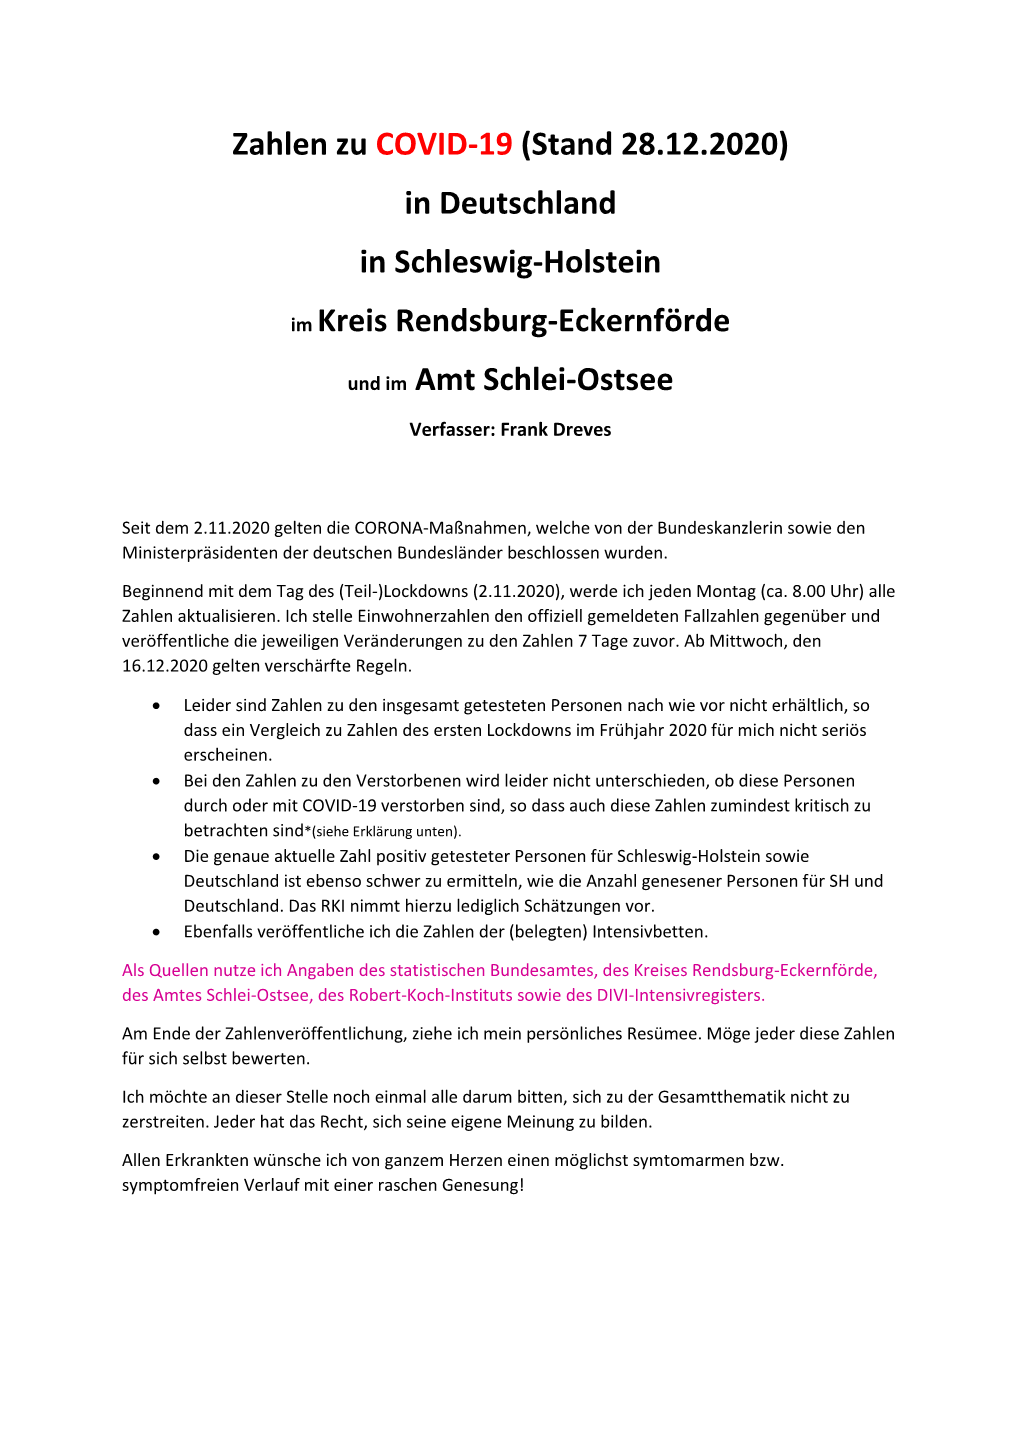 Zahlen Zu COVID-19 (Stand 28.12.2020) in Deutschland in Schleswig-Holstein